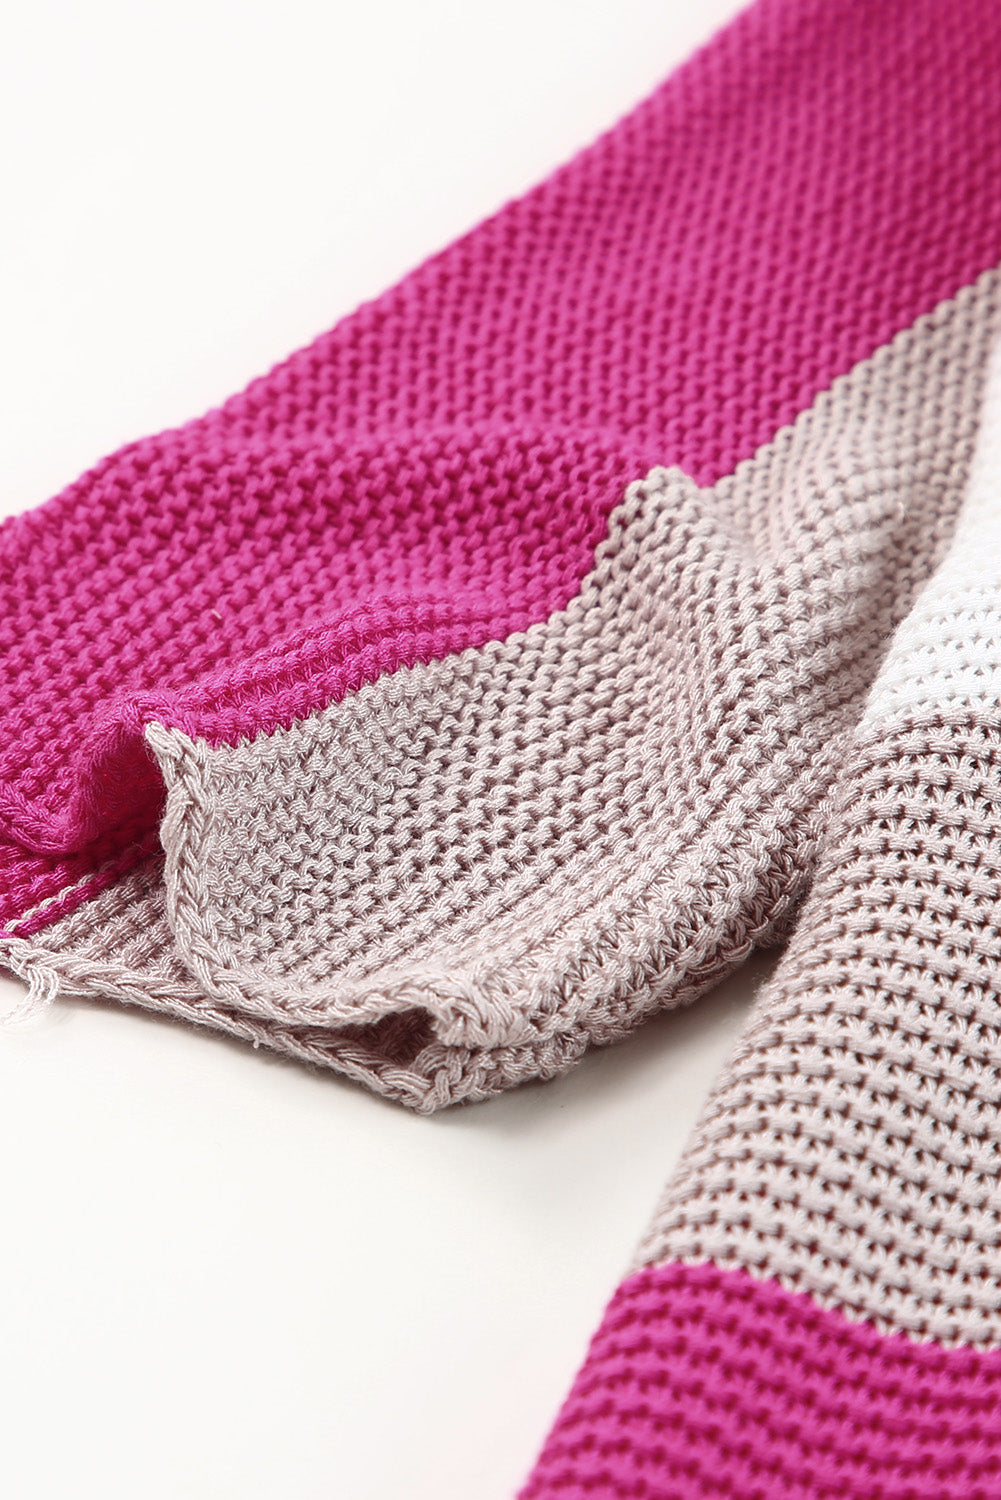 Pleten pulover s pol rokavi z rožnatimi kontrastnimi črtami